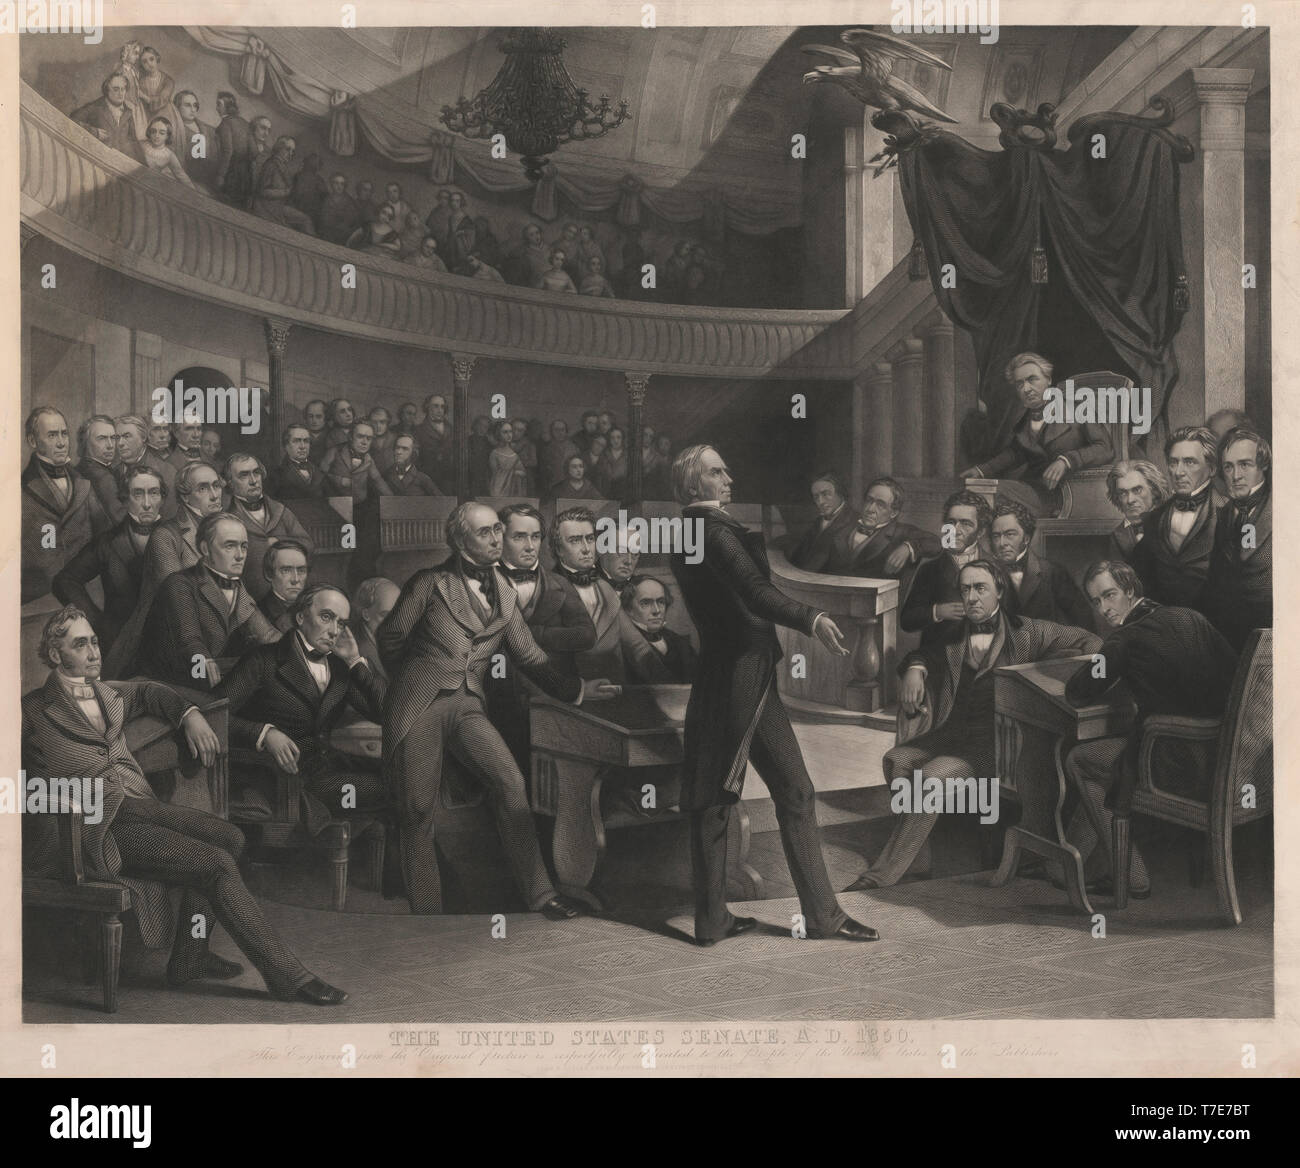 Der Senat der Vereinigten Staaten, A.D. 1850, Henry Clay Sprechen über den Kompromiss von 1850 Im alten Plenarsaal des Senats, gezeichnet von P.F. Rothermel, von R.: Whitchurch, von John M. Butler und Alfred Lang, 1855 veröffentlicht eingraviert Stockfoto